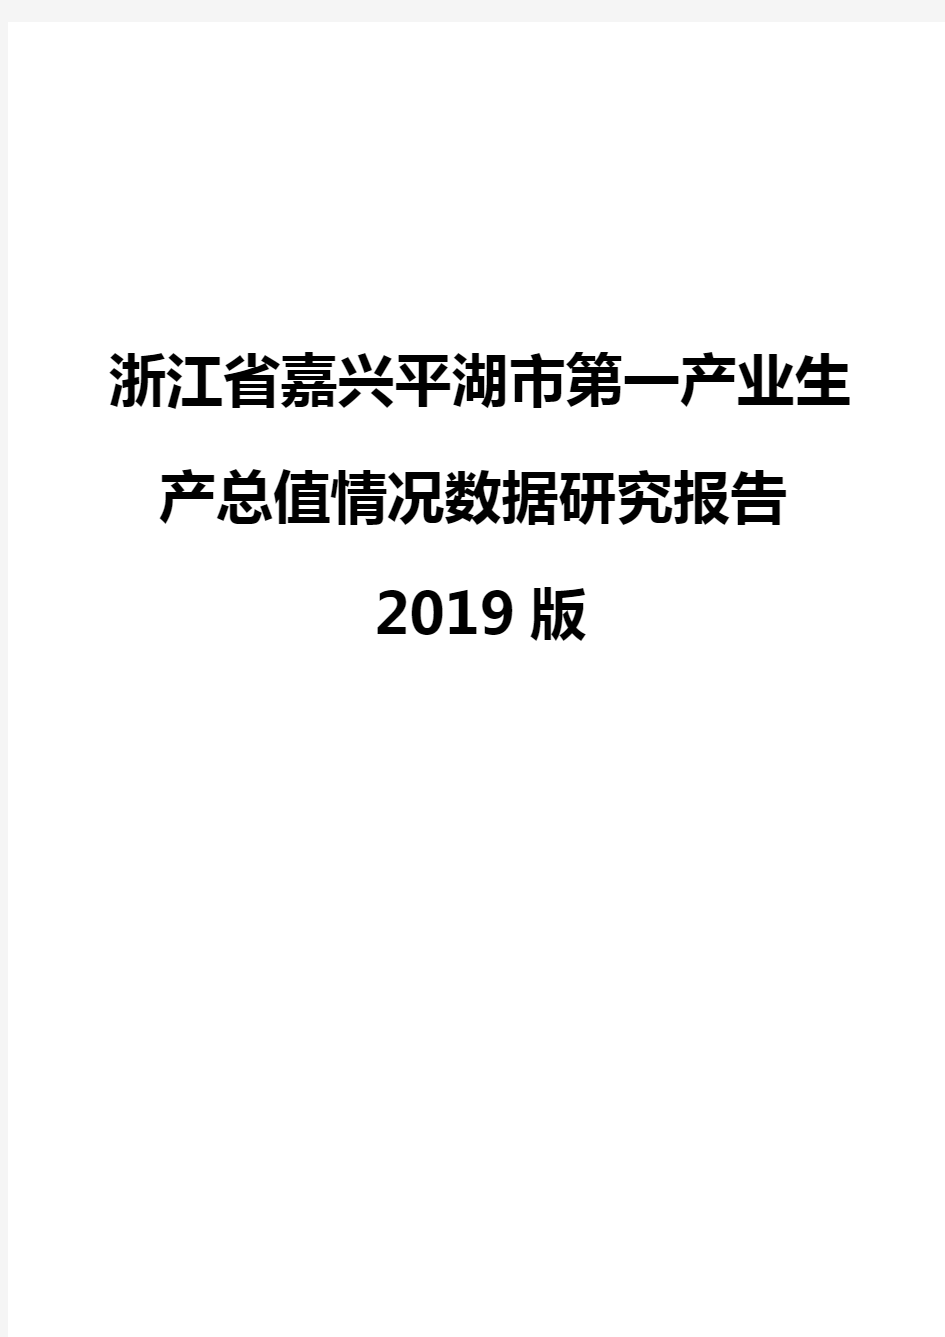 浙江省嘉兴平湖市第一产业生产总值情况数据研究报告2019版